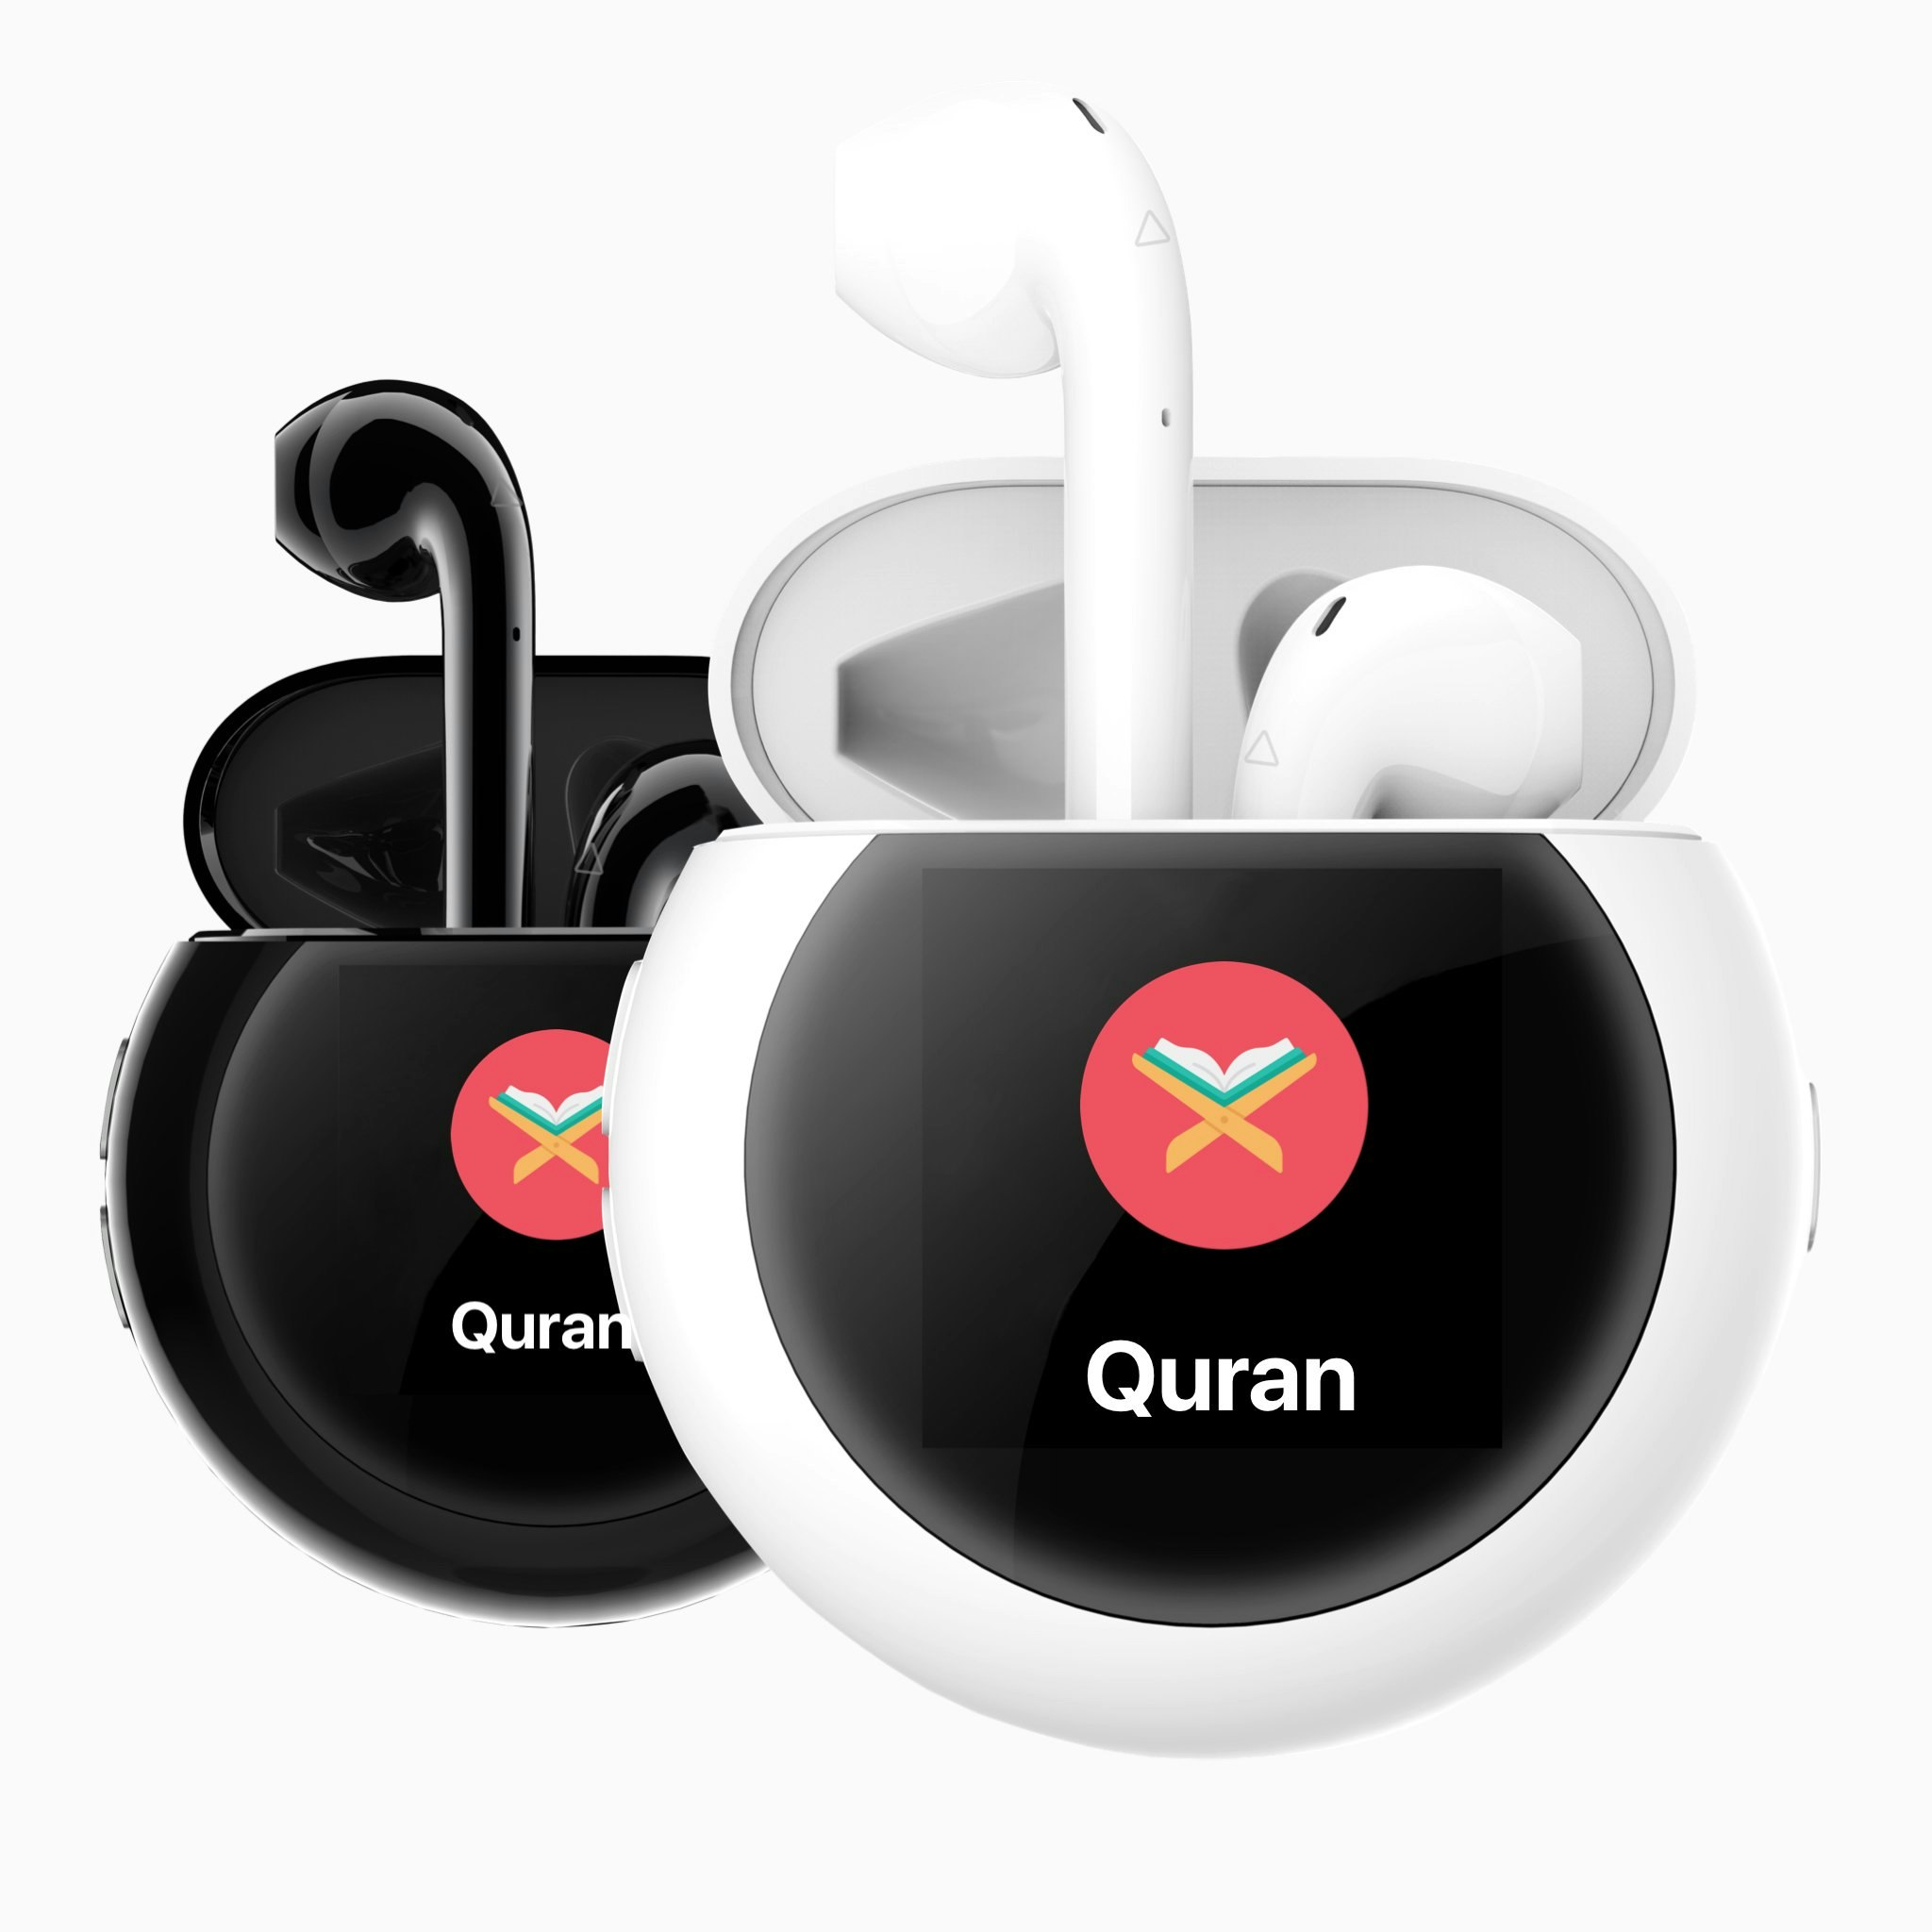 Quran Pods